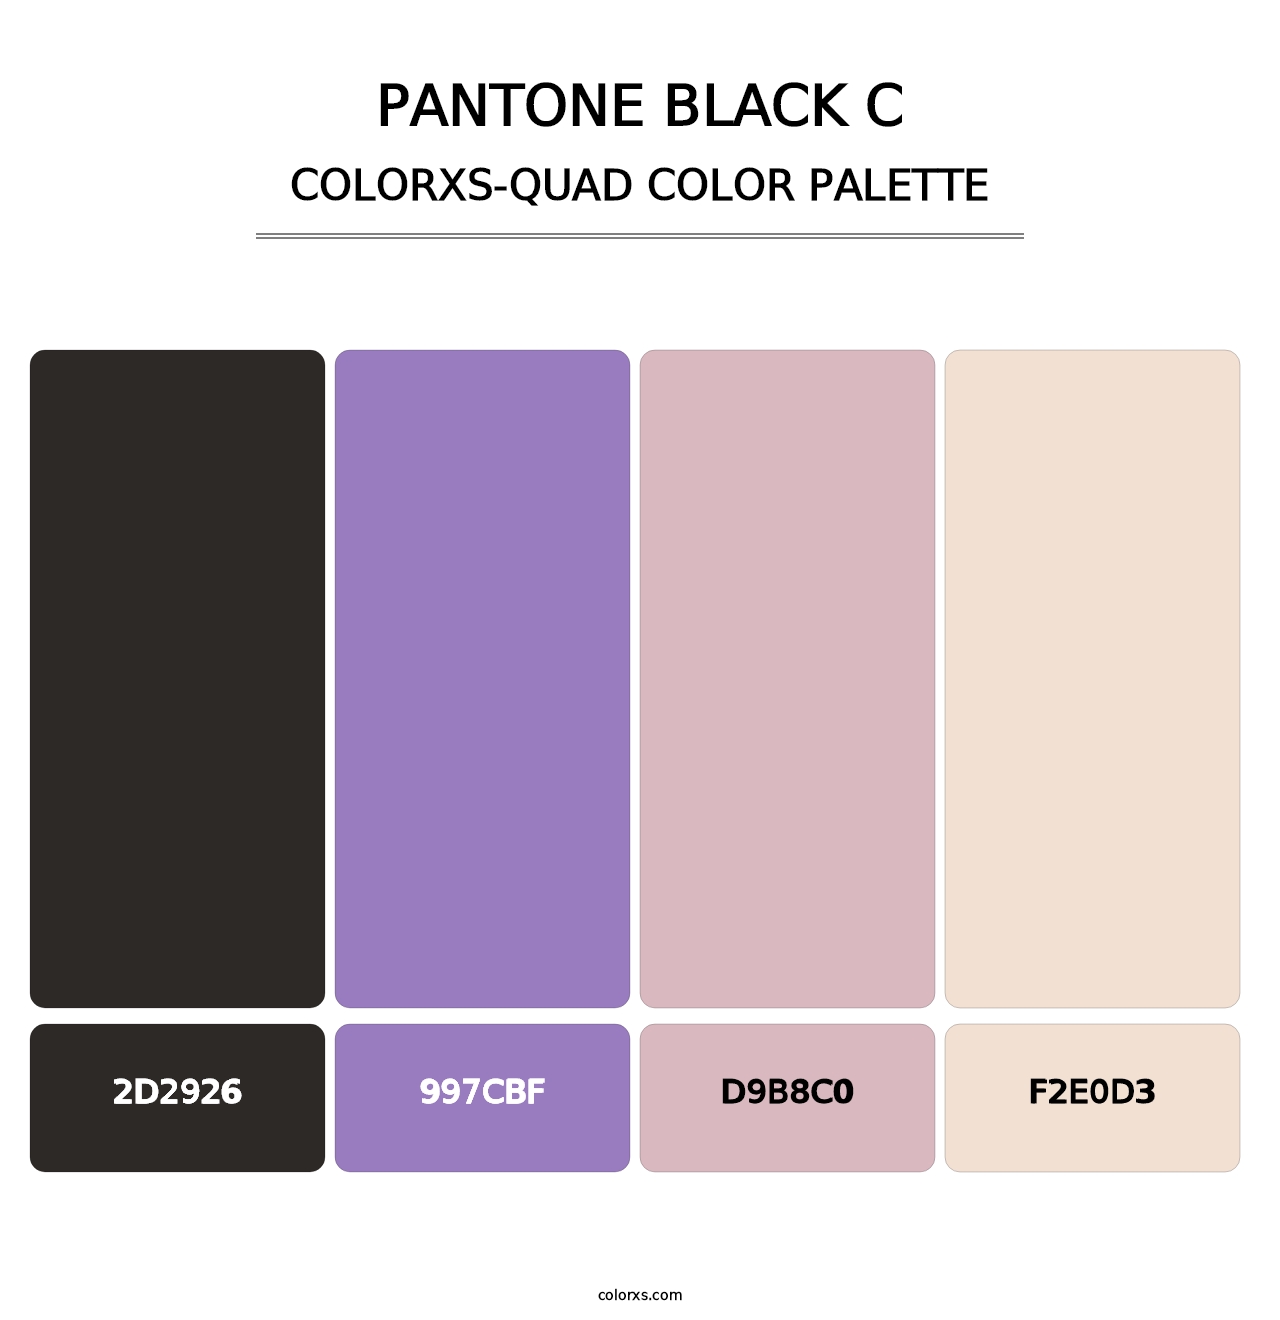 PANTONE Black C - Colorxs Quad Palette